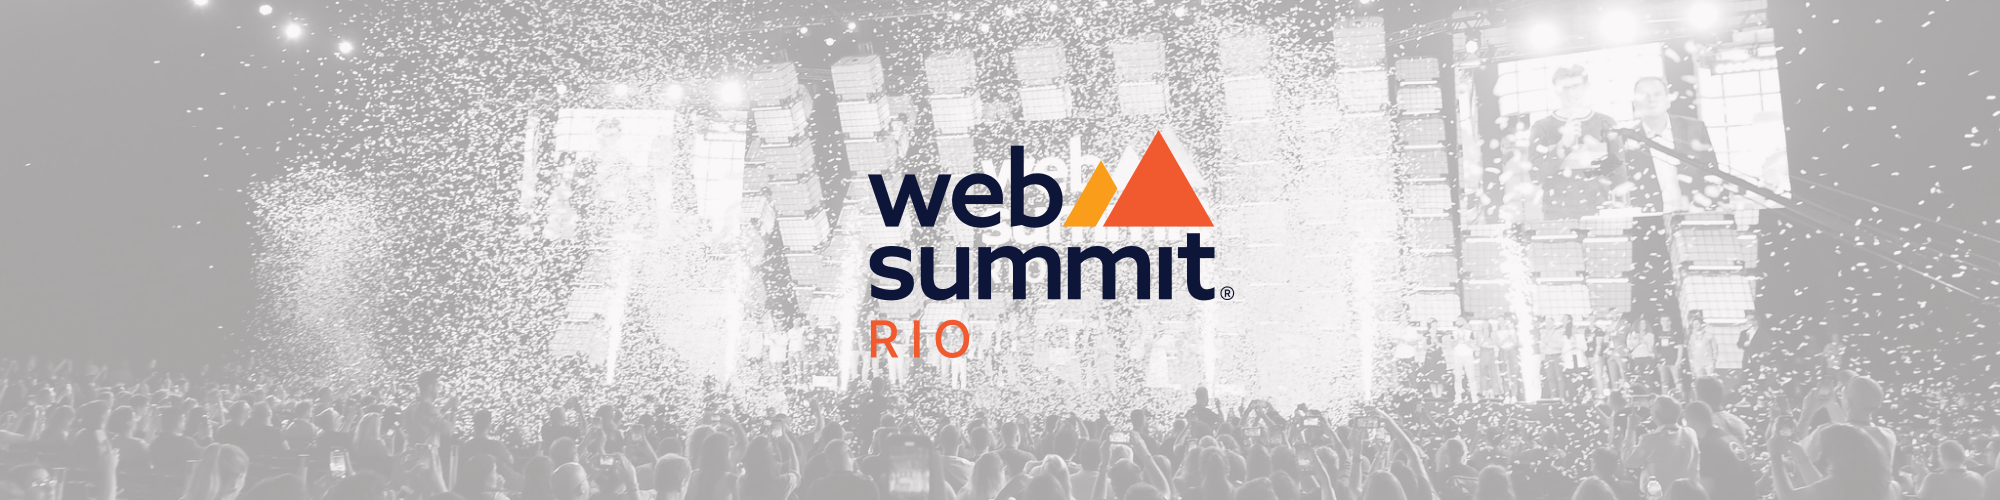 Websummit Rio